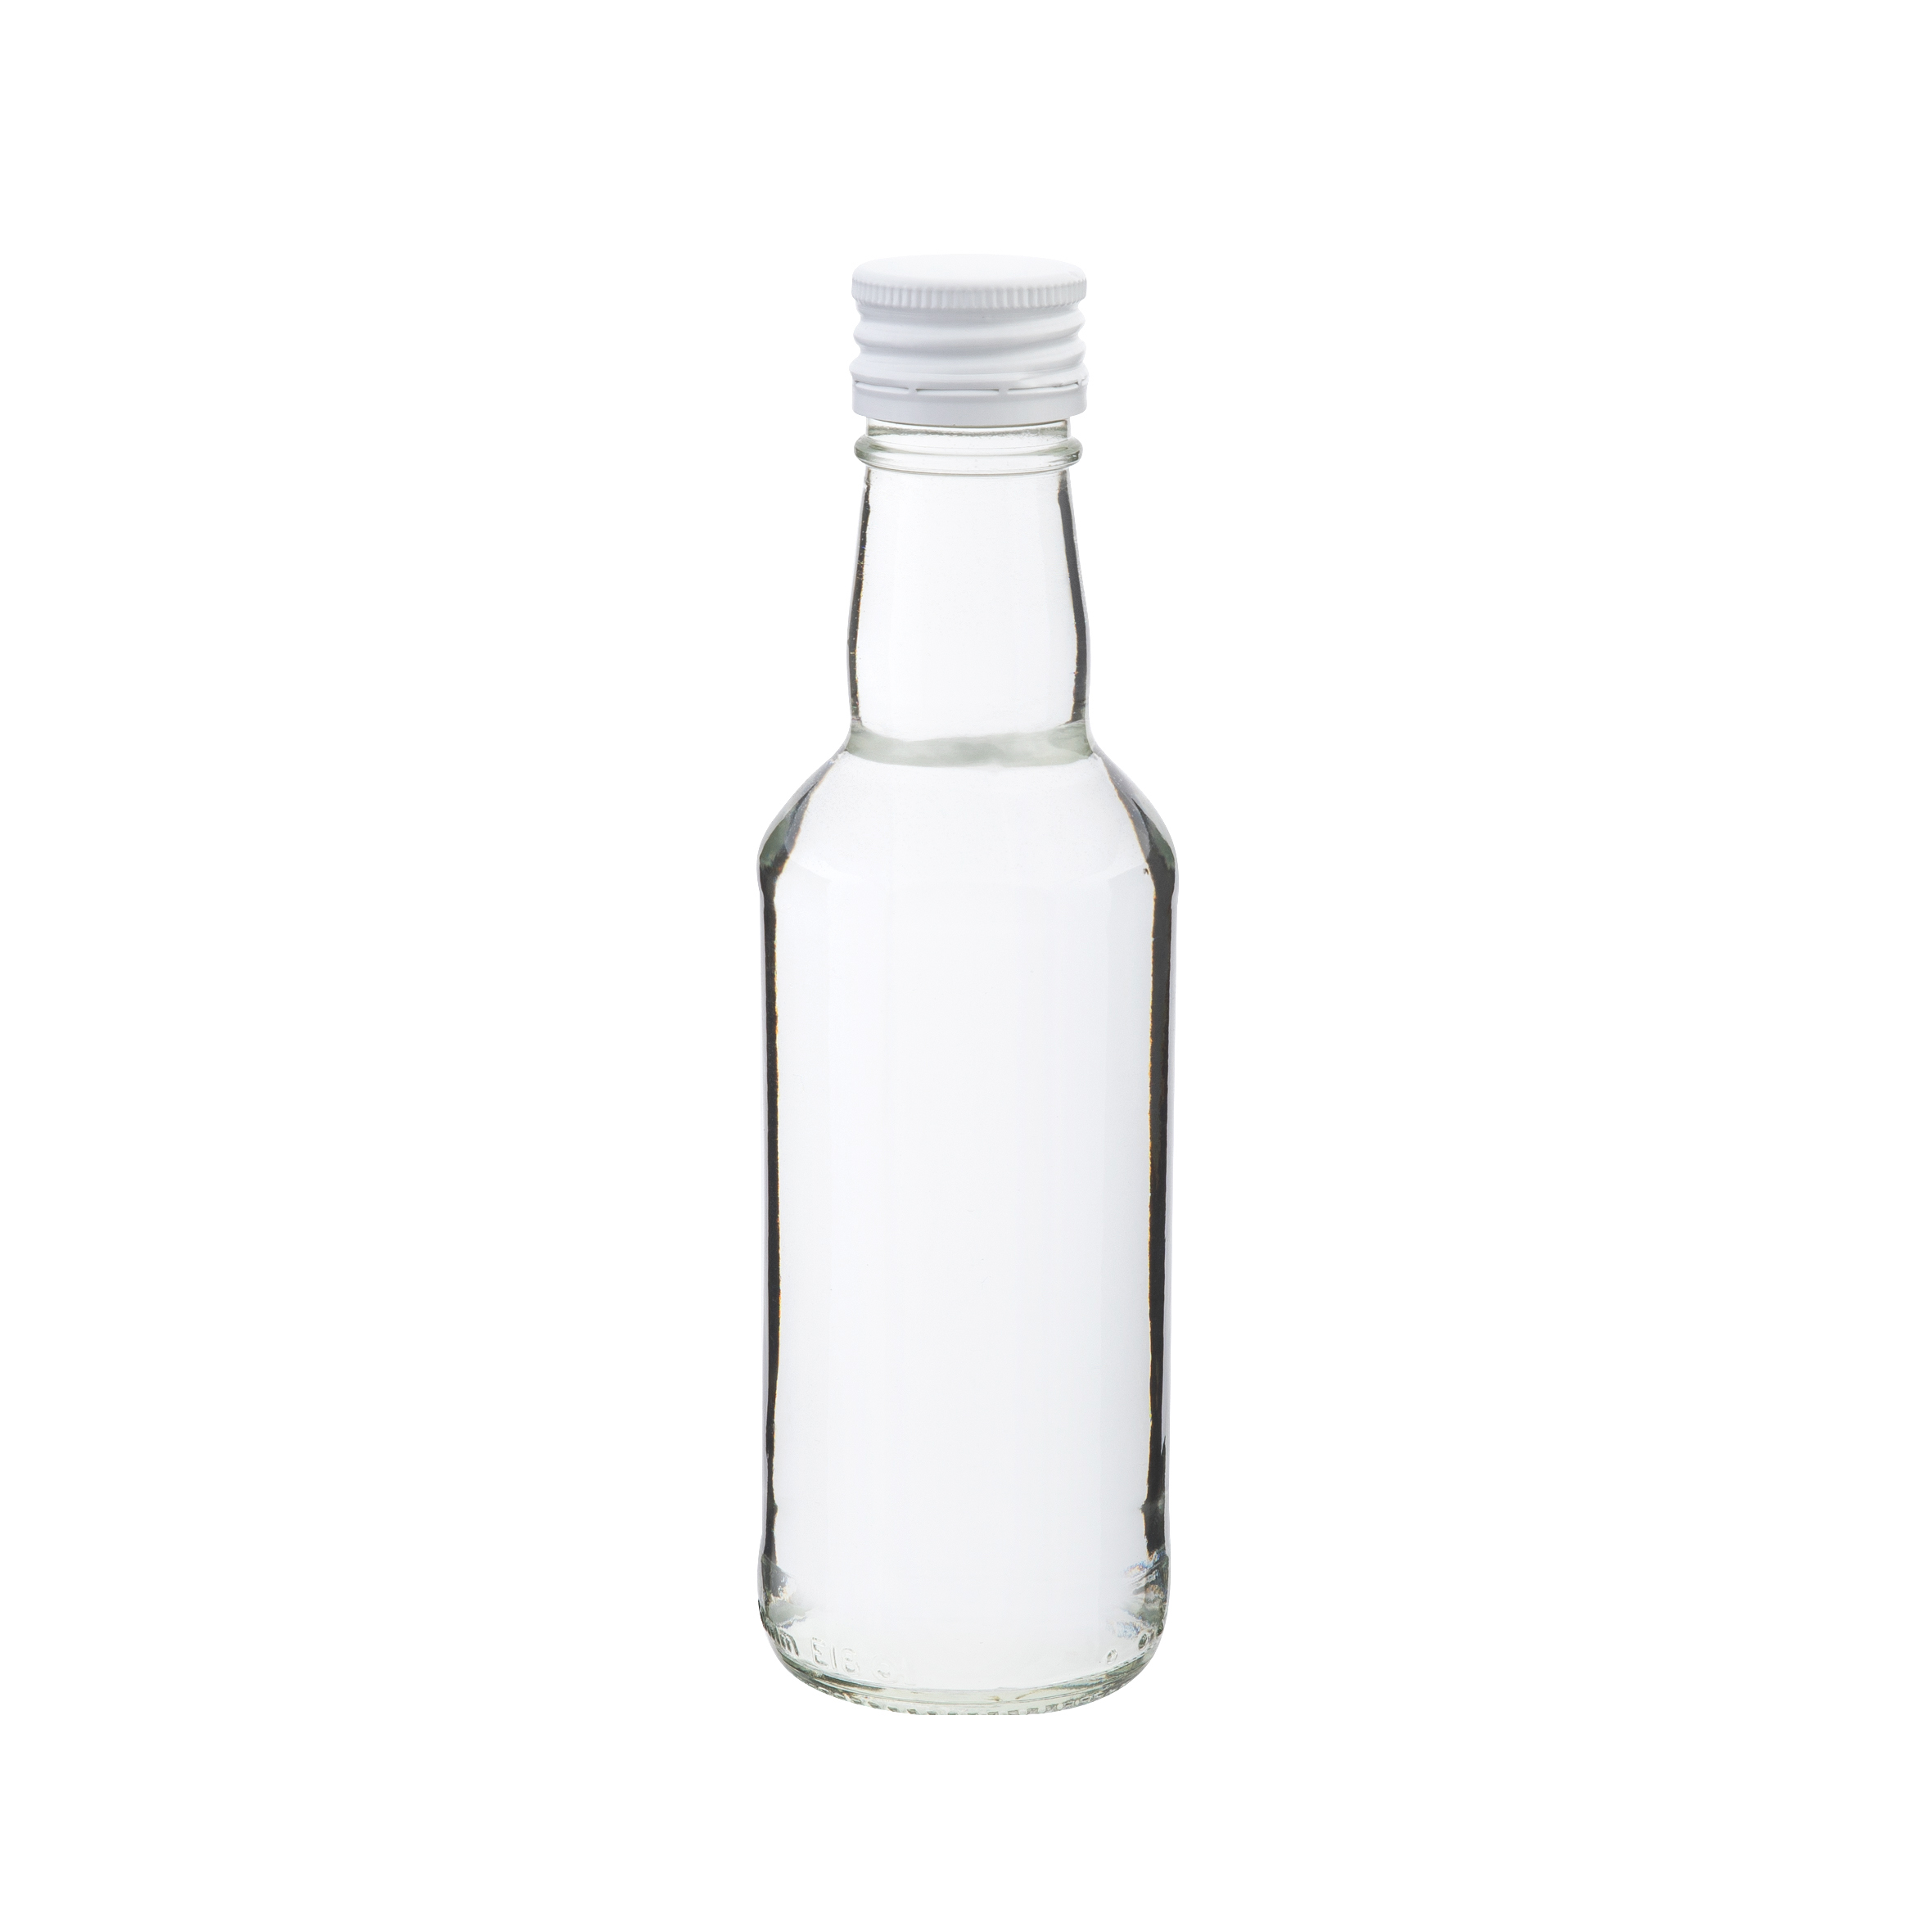  - WESEL Gläser-Flaschen-Set im Korb 12tlg 4 Flaschen 200ml + 8 Gläser 190 ml